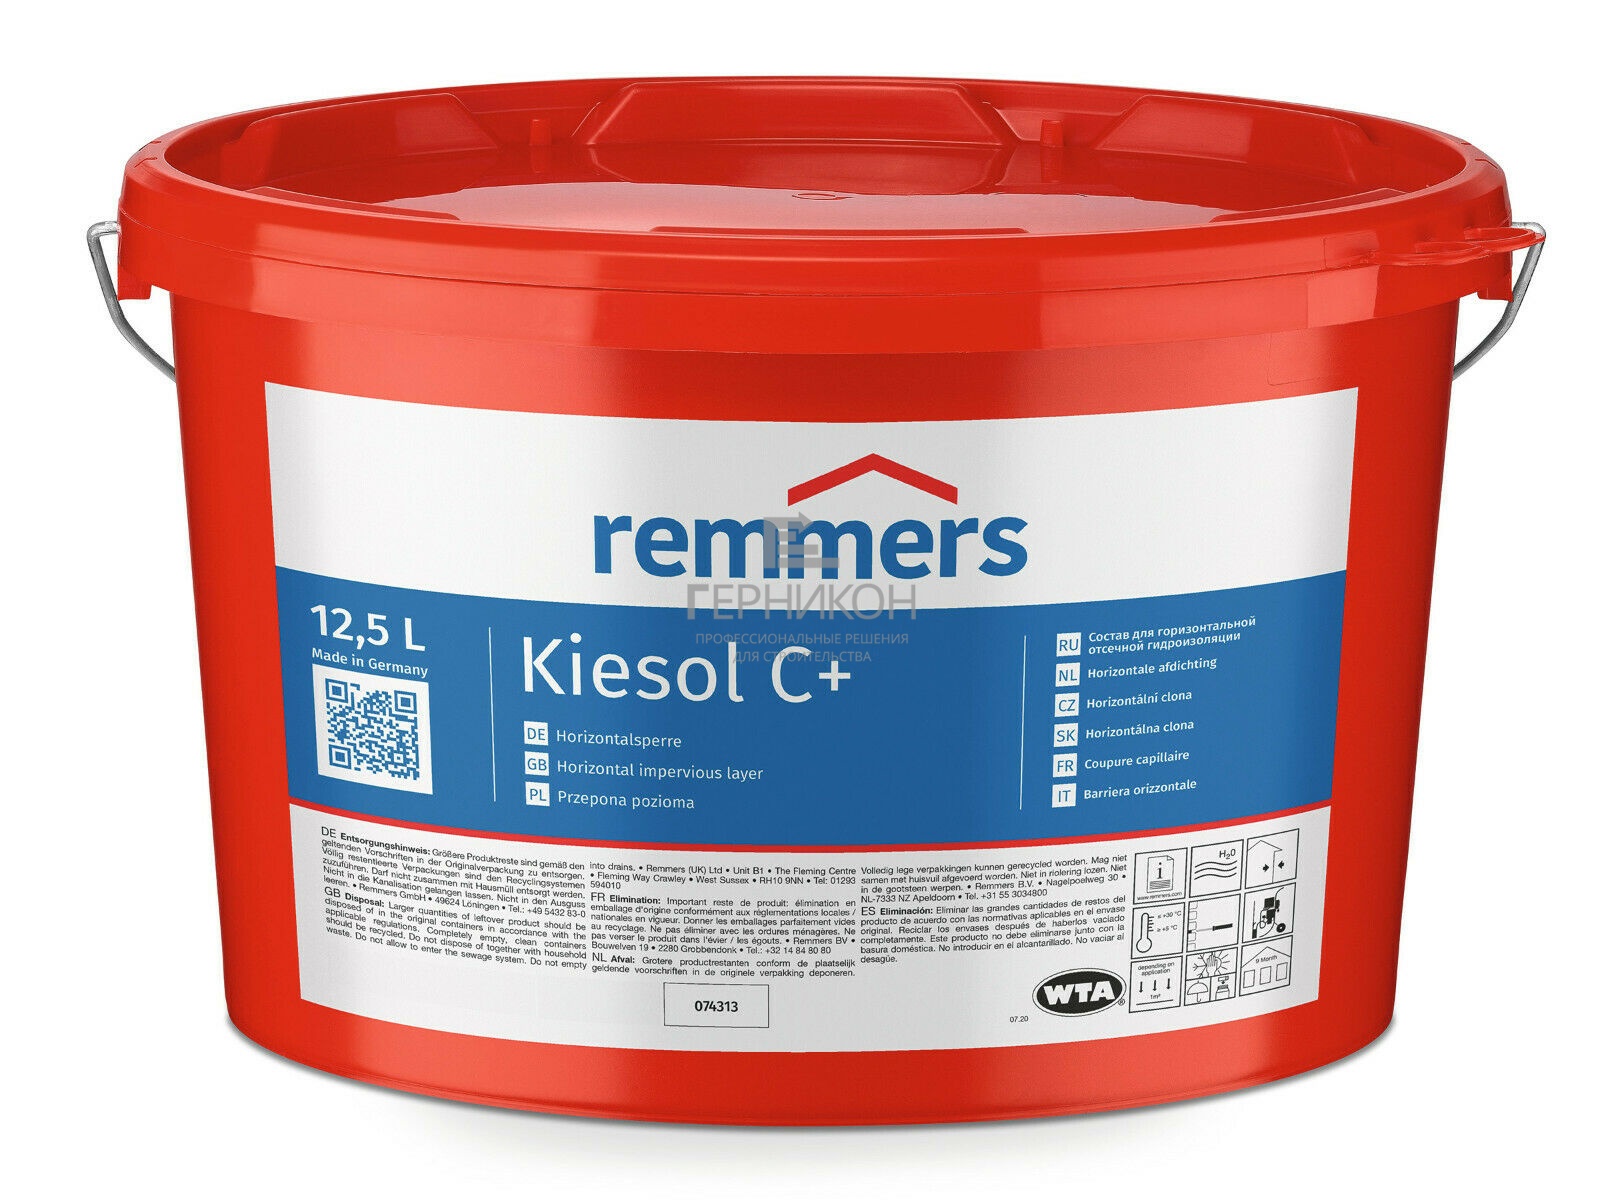 remmers kiesol c+ 12,5л (реммерс киесол ц+ 12,5л)